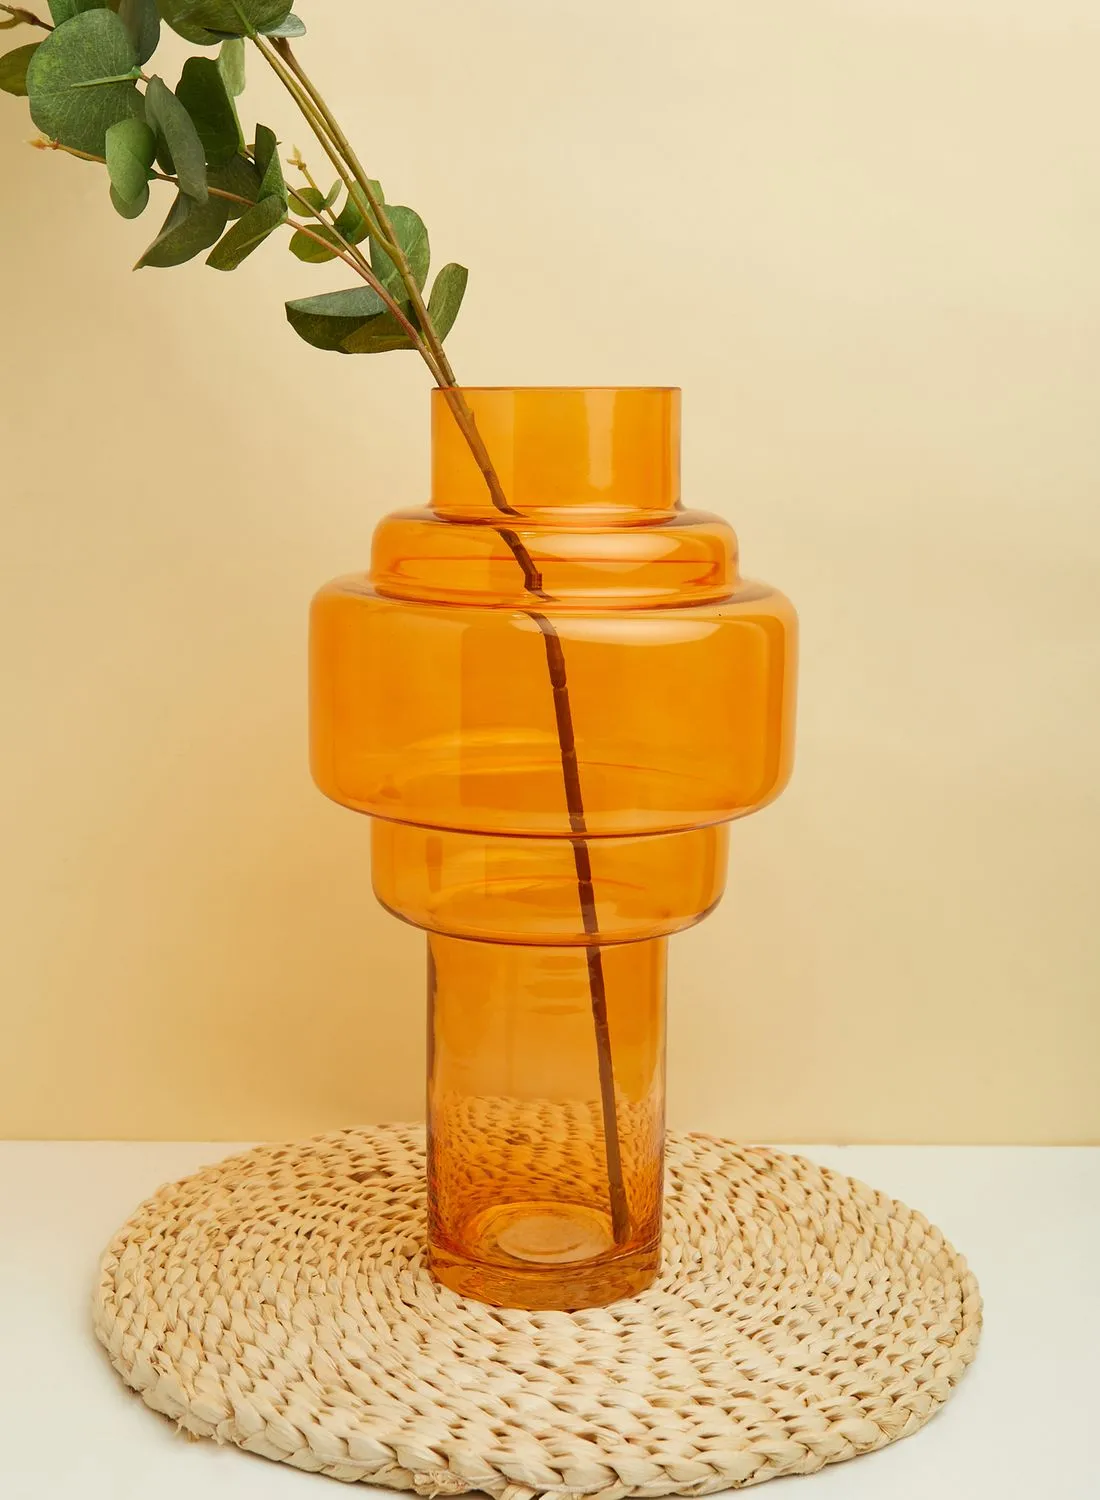 مزهرية زجاجية كبيرة باللون البرتقالي من بريميير كايدن